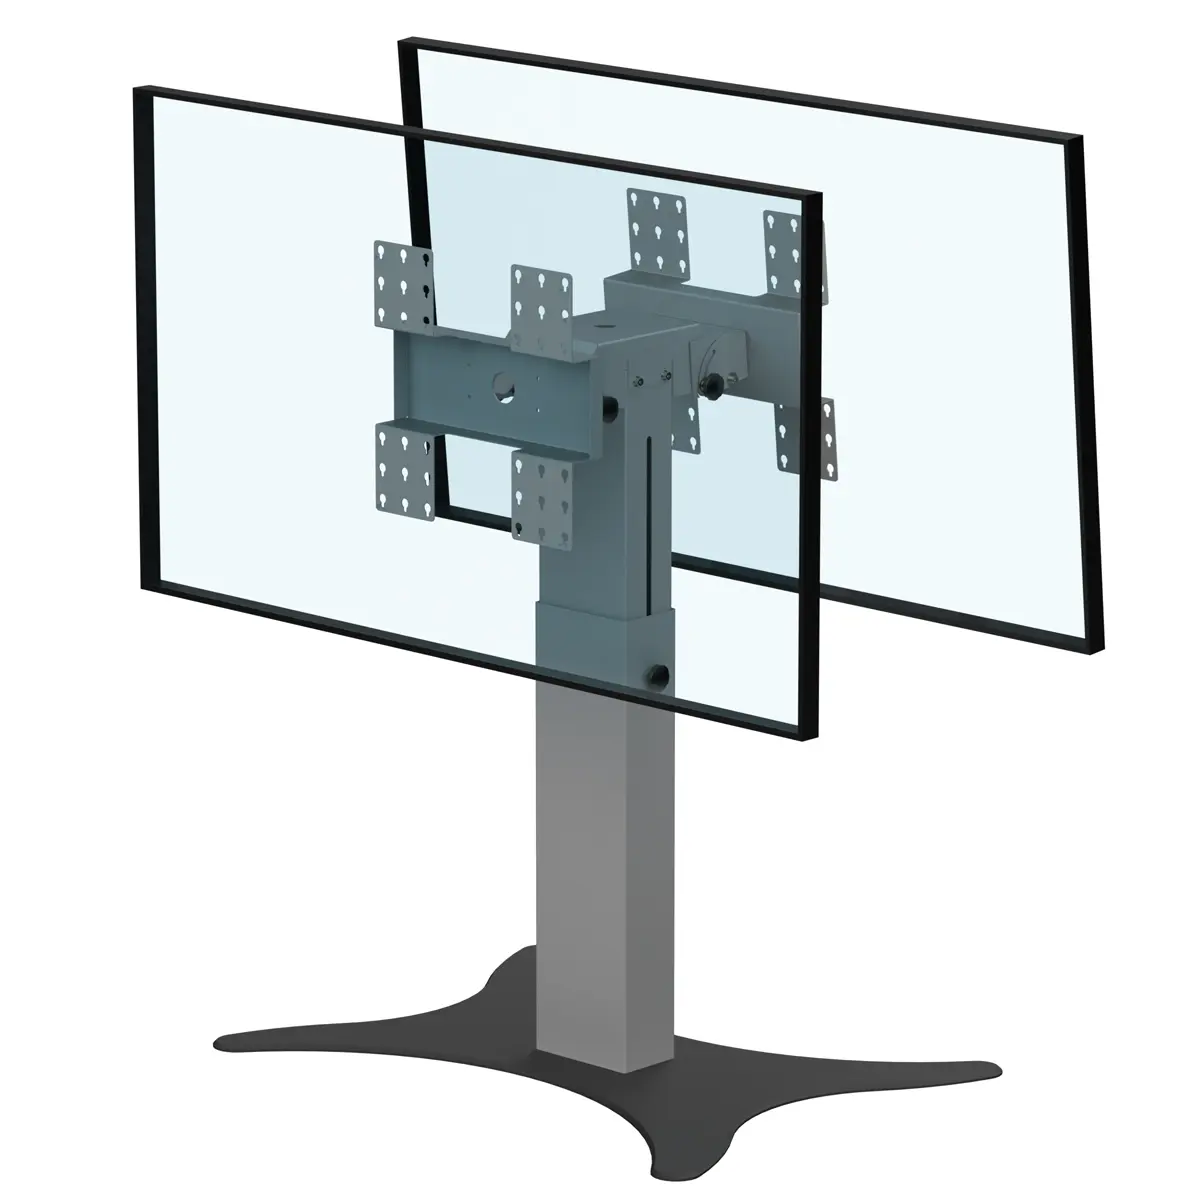 Support double écrans bas retour écran hauteur réglable 800-1100mm réglable en hauteur avec embase type B